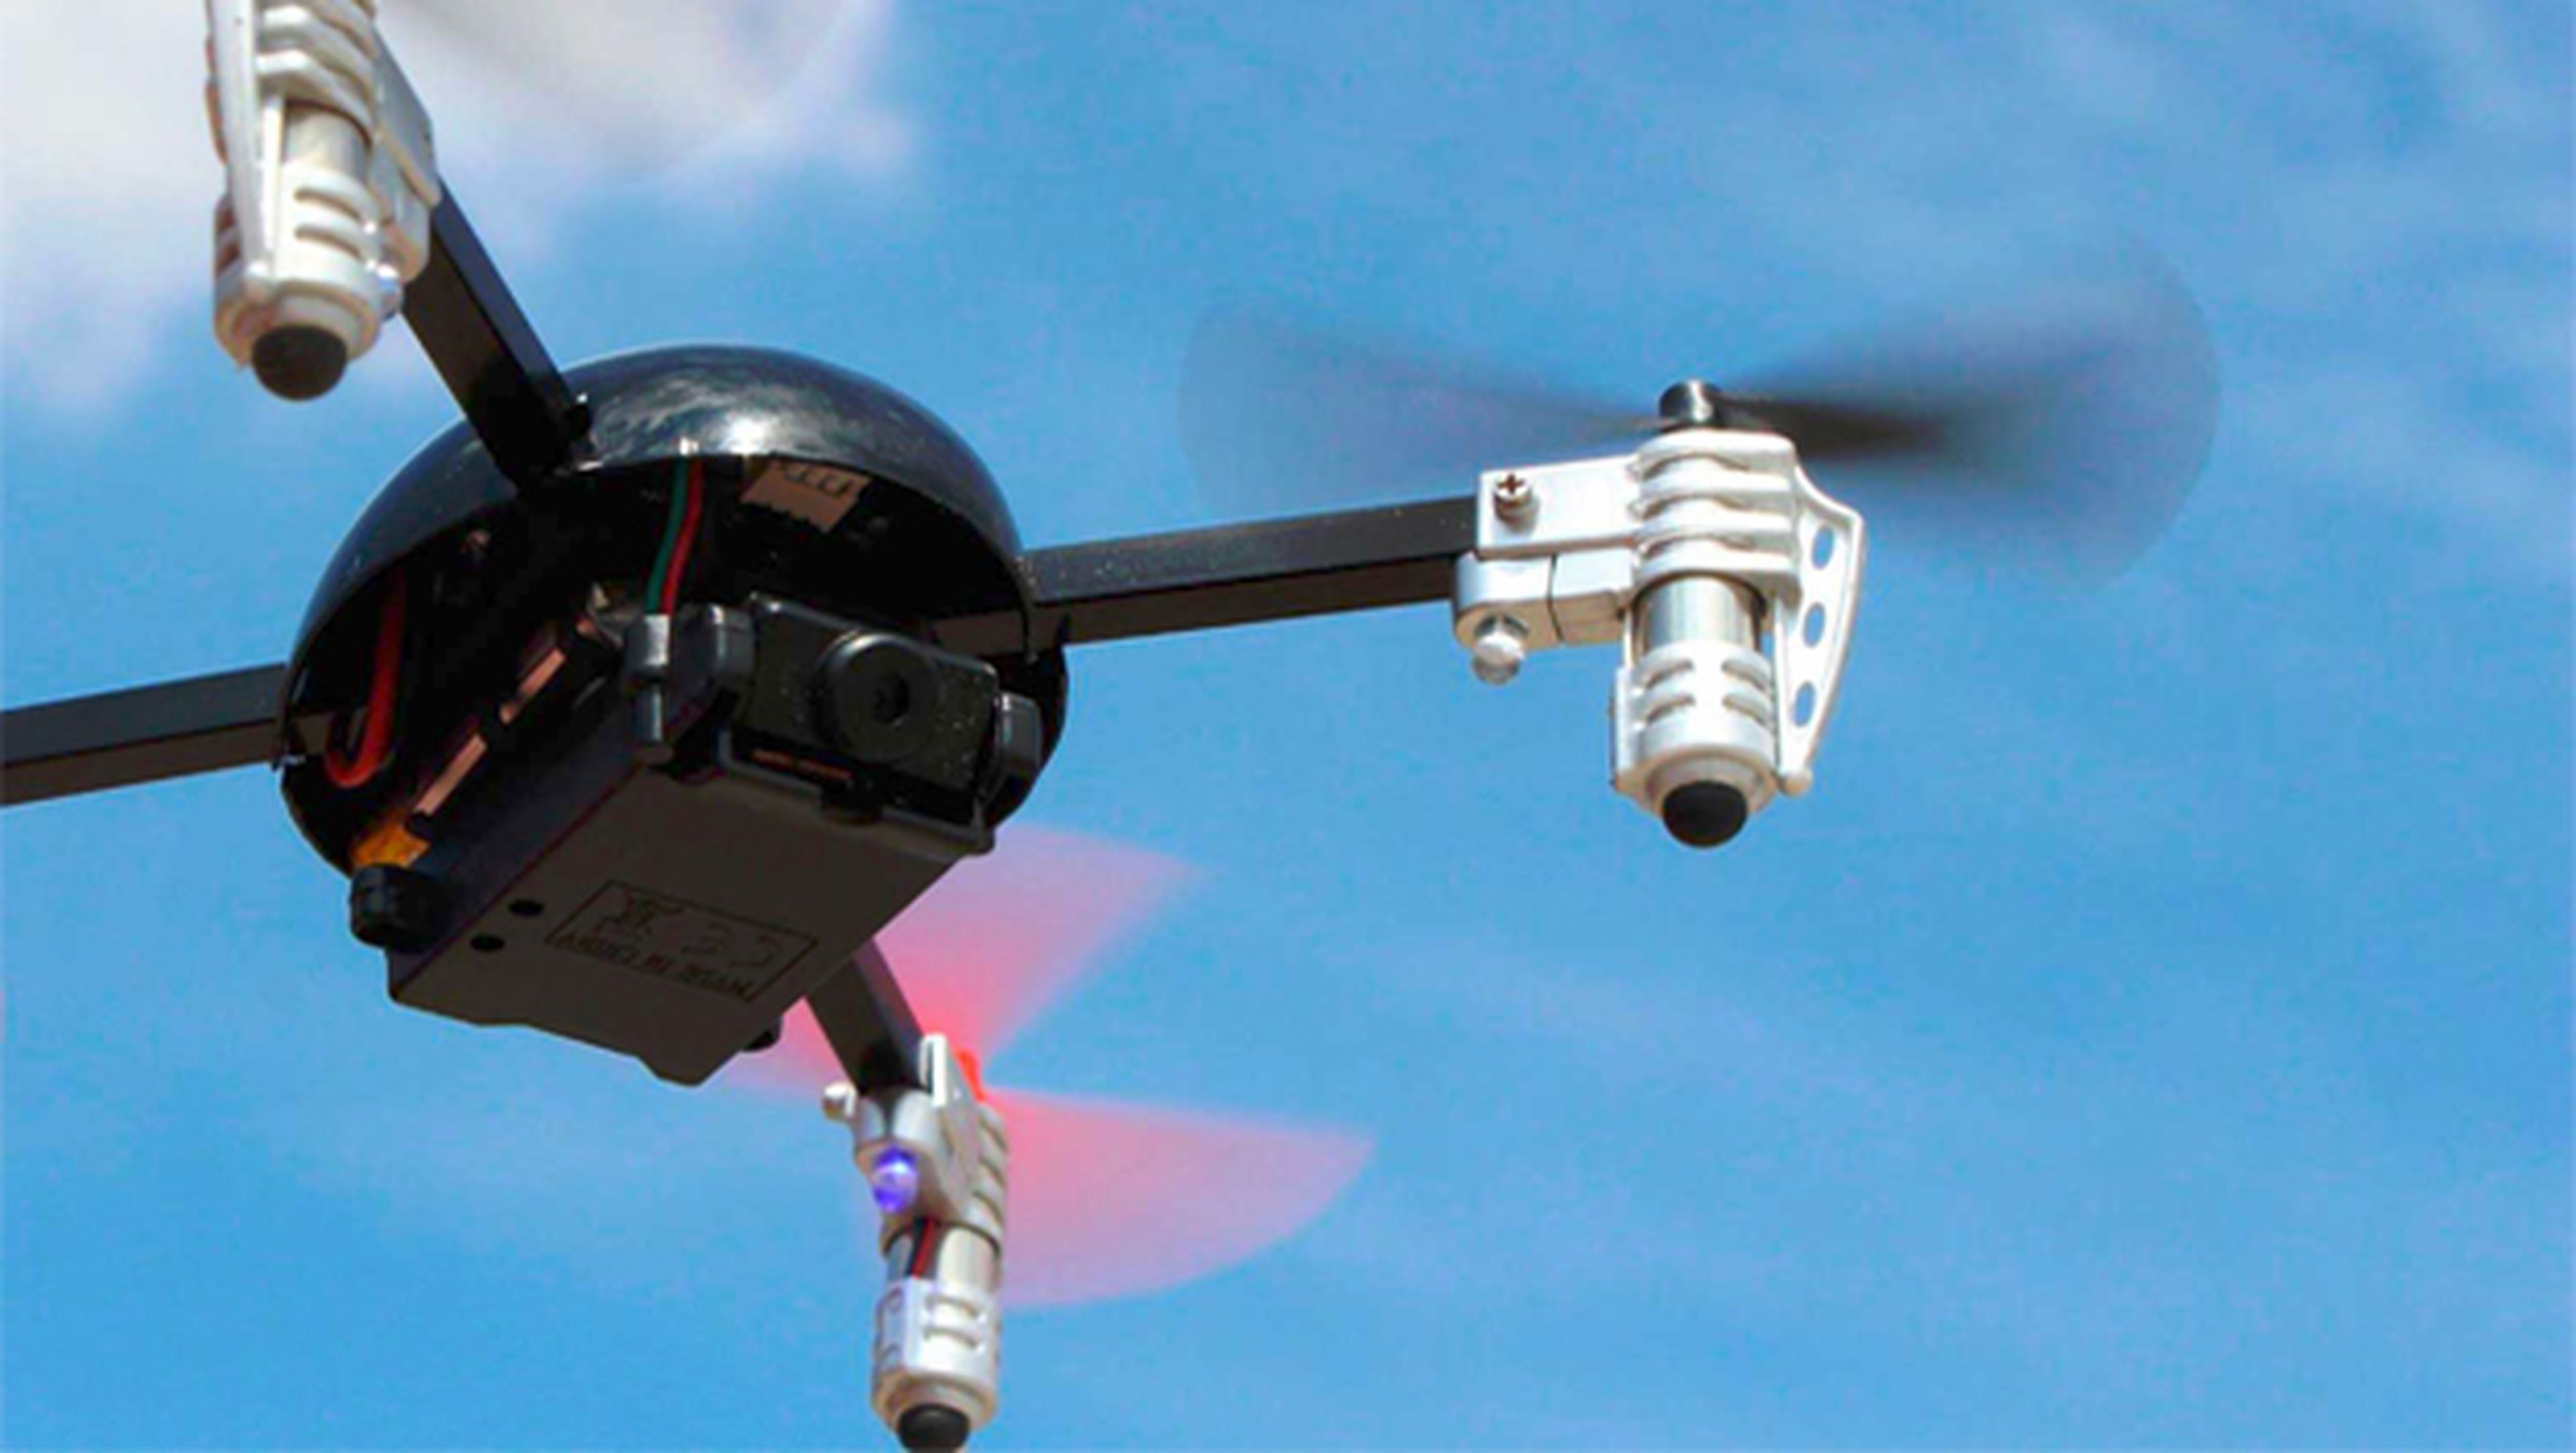 Los 5 mejores drones con cámara por menos de 100 € de eBay